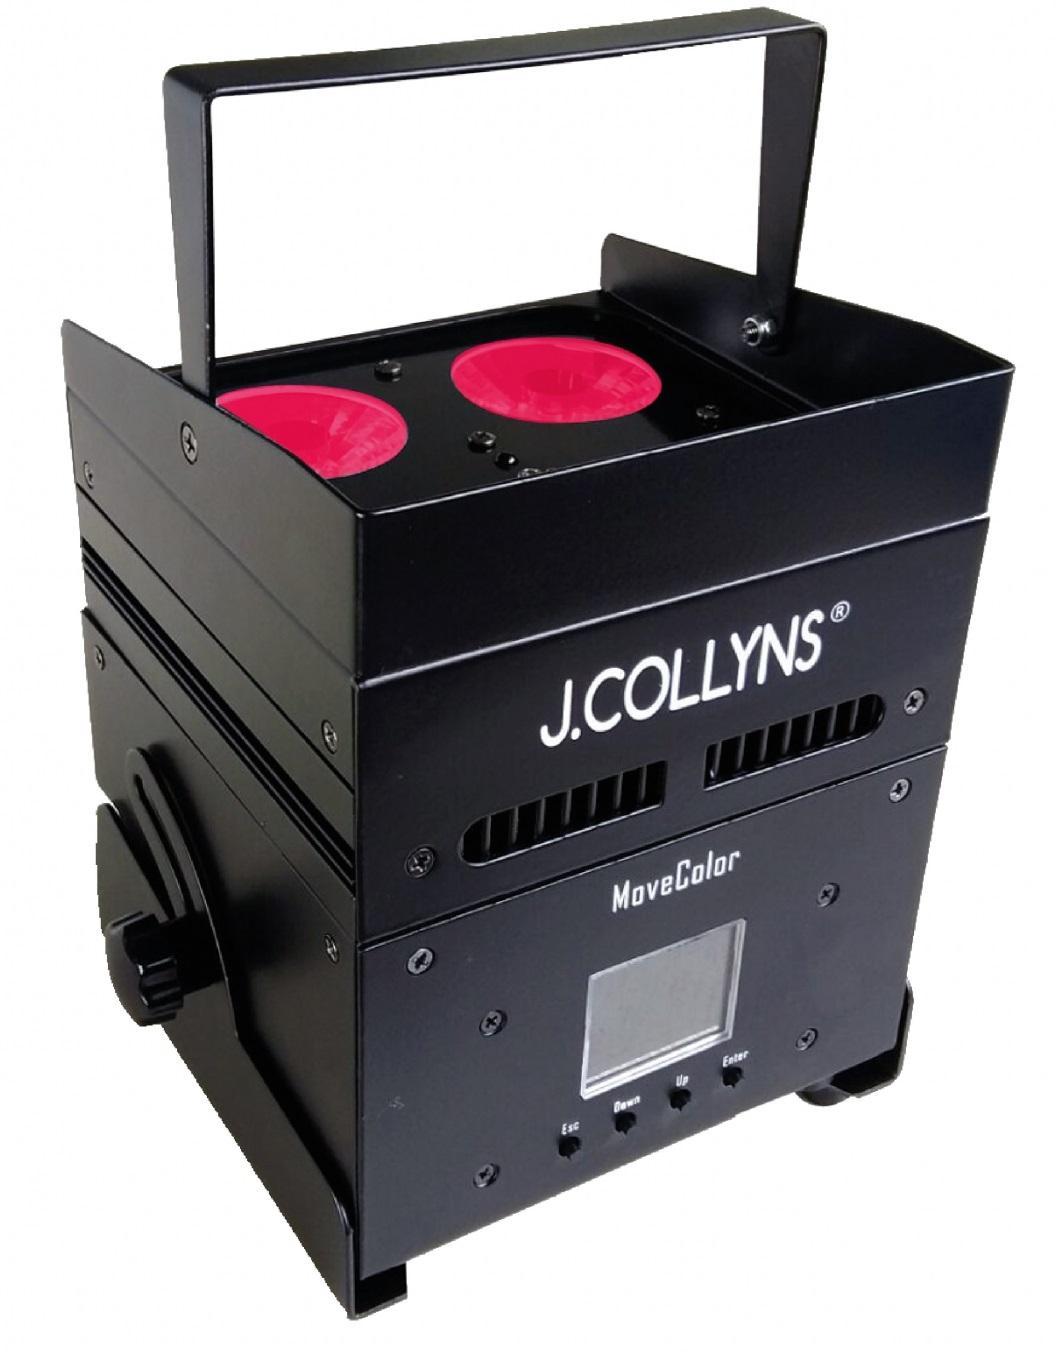 Projecteur sans fil J.collyns MoveColor